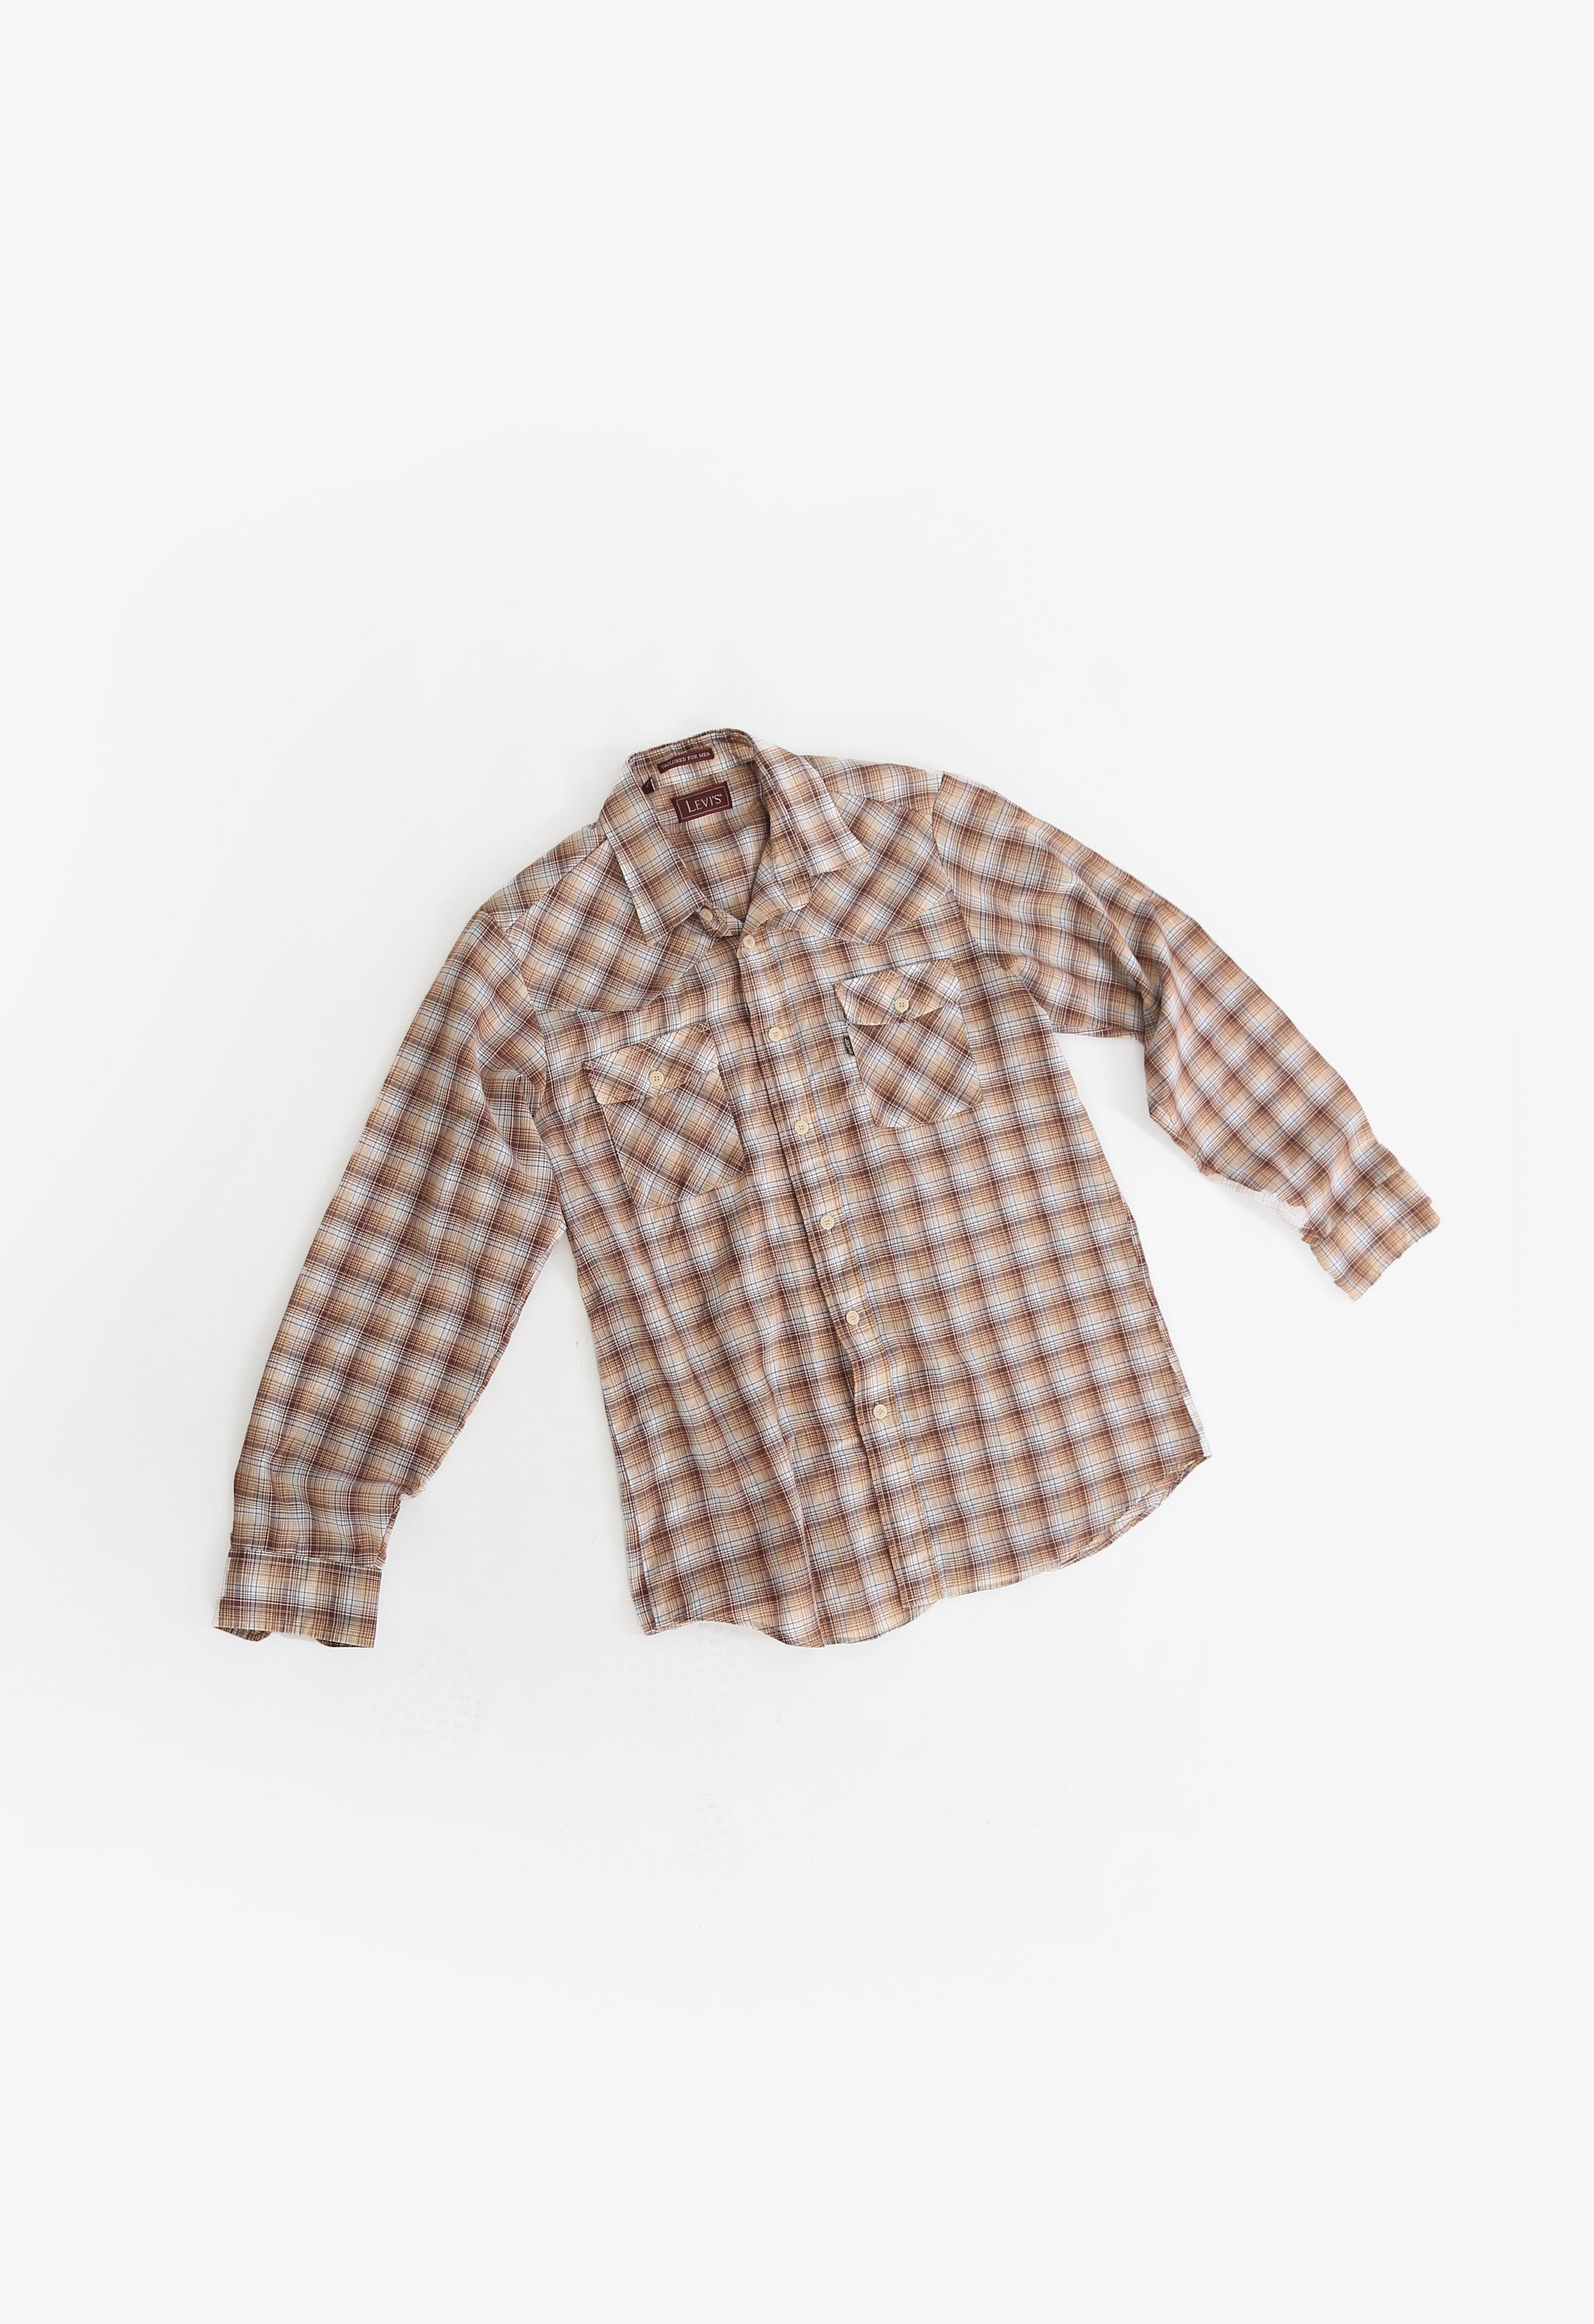 LVC Levis Vintage Clothing Flannel Shirt Size L Vintage Rare P2P 23'2